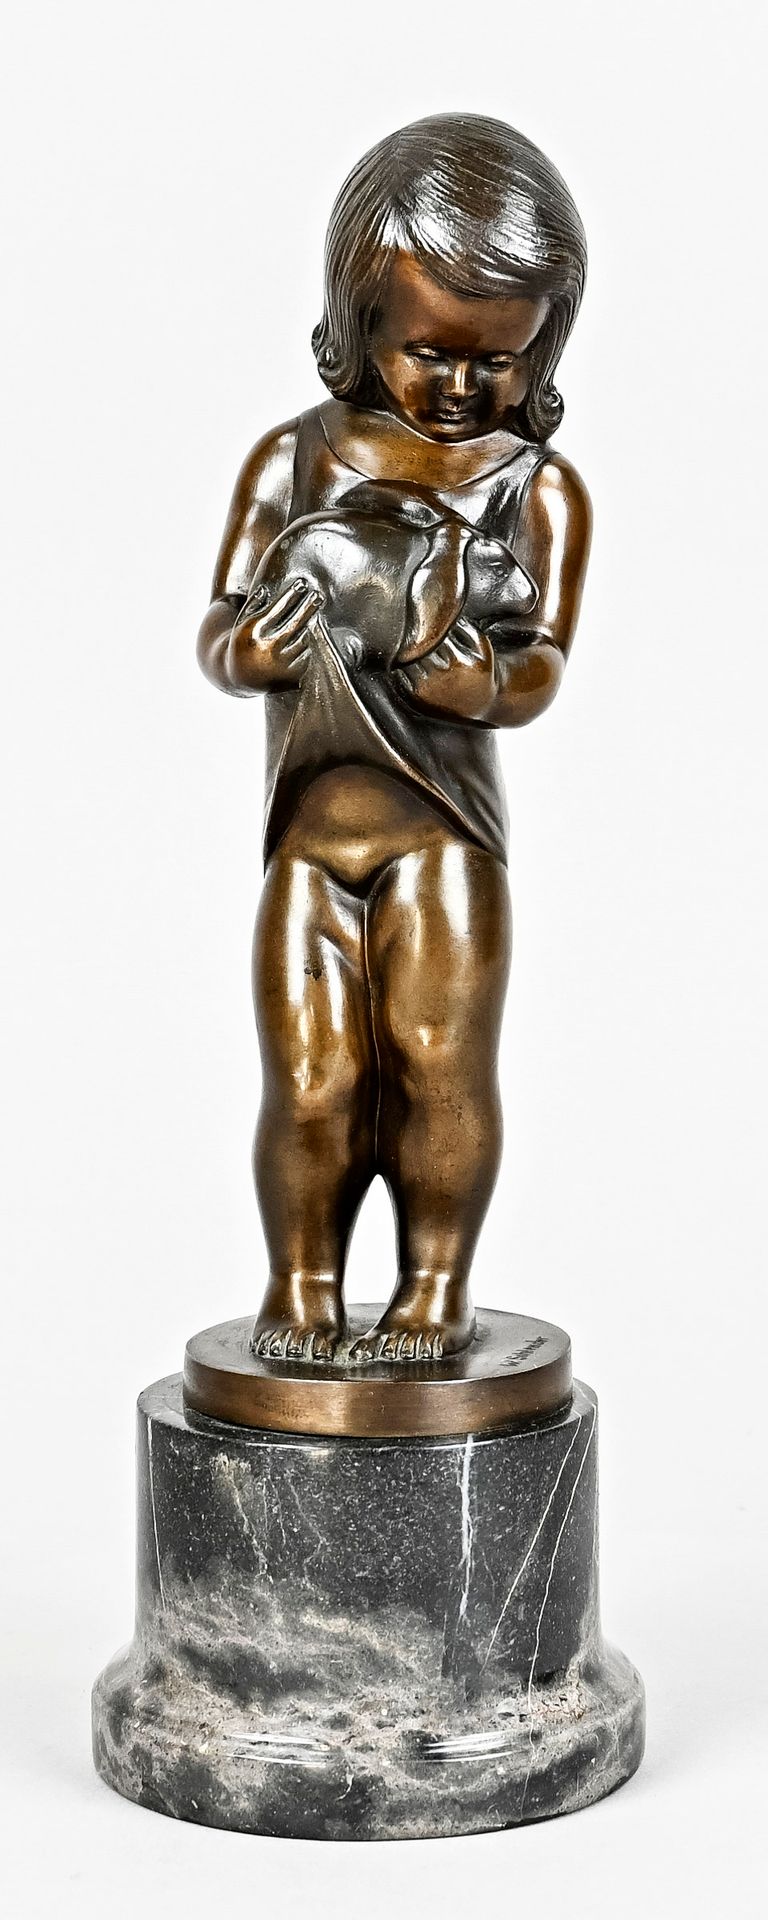 Null 施兰德，威廉姆（1858 - 1945），铜像 "带着兔子的女孩"，大理石基座，美丽的铜锈，高27厘米